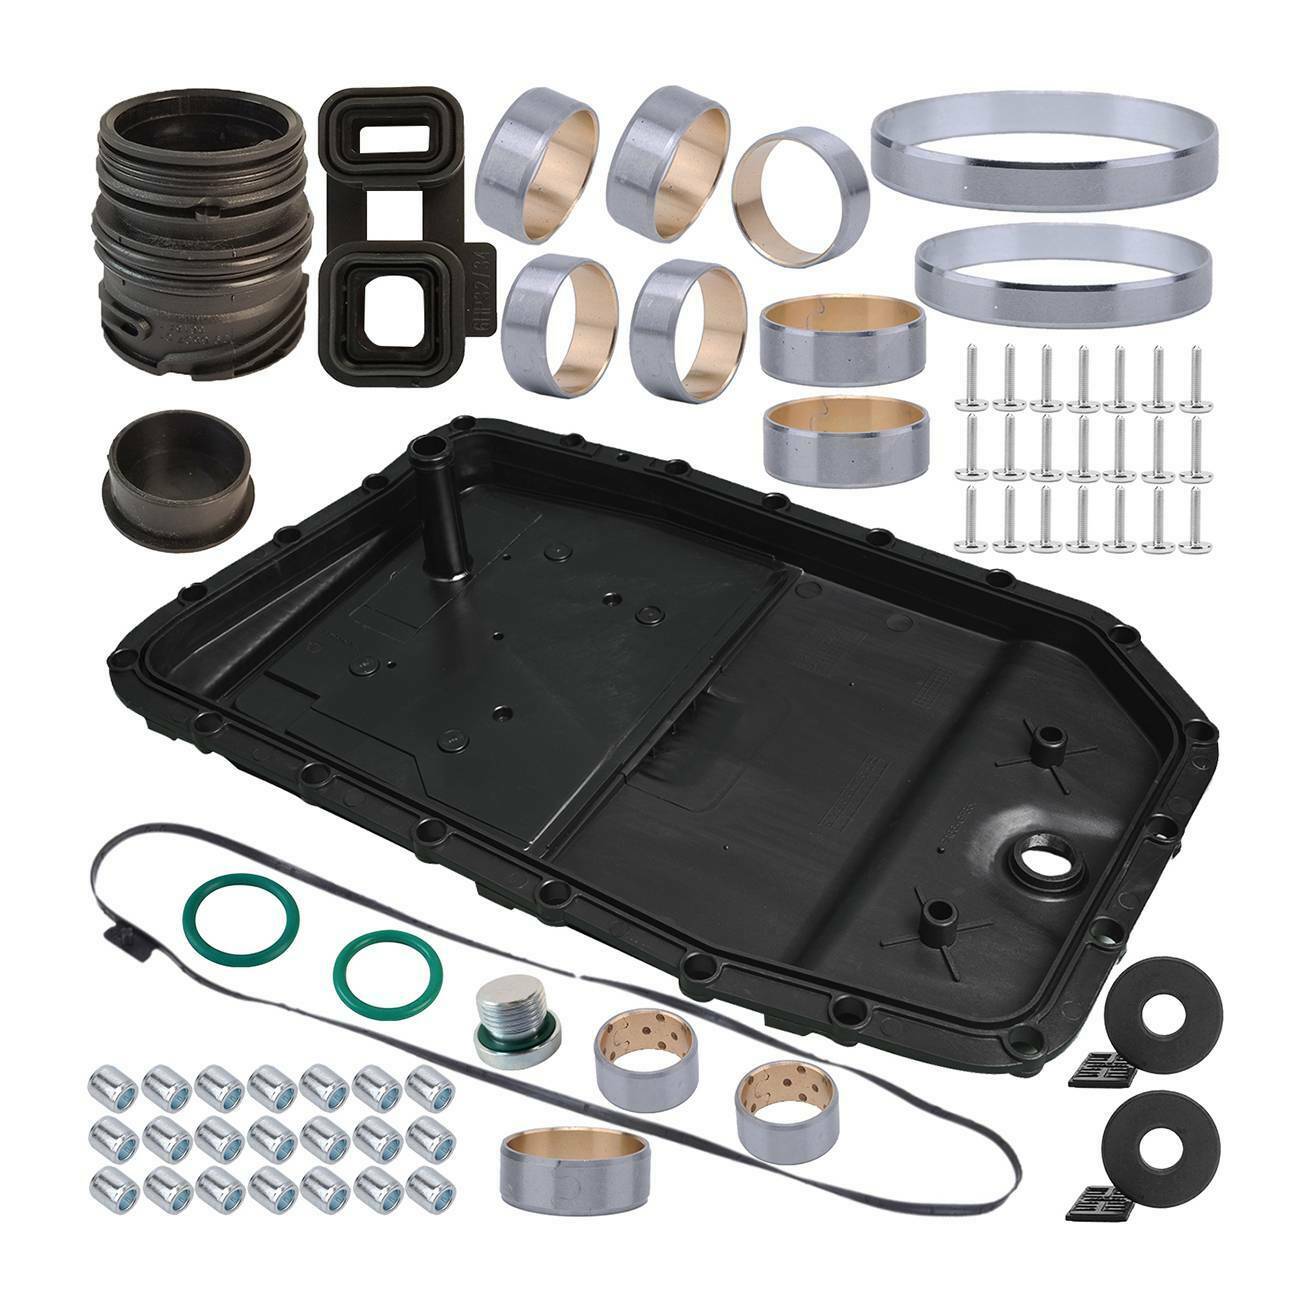 Trans Oil Pan + Repair Kit + Gasket + Drain Plug for BMW E82 E84 E89 E90